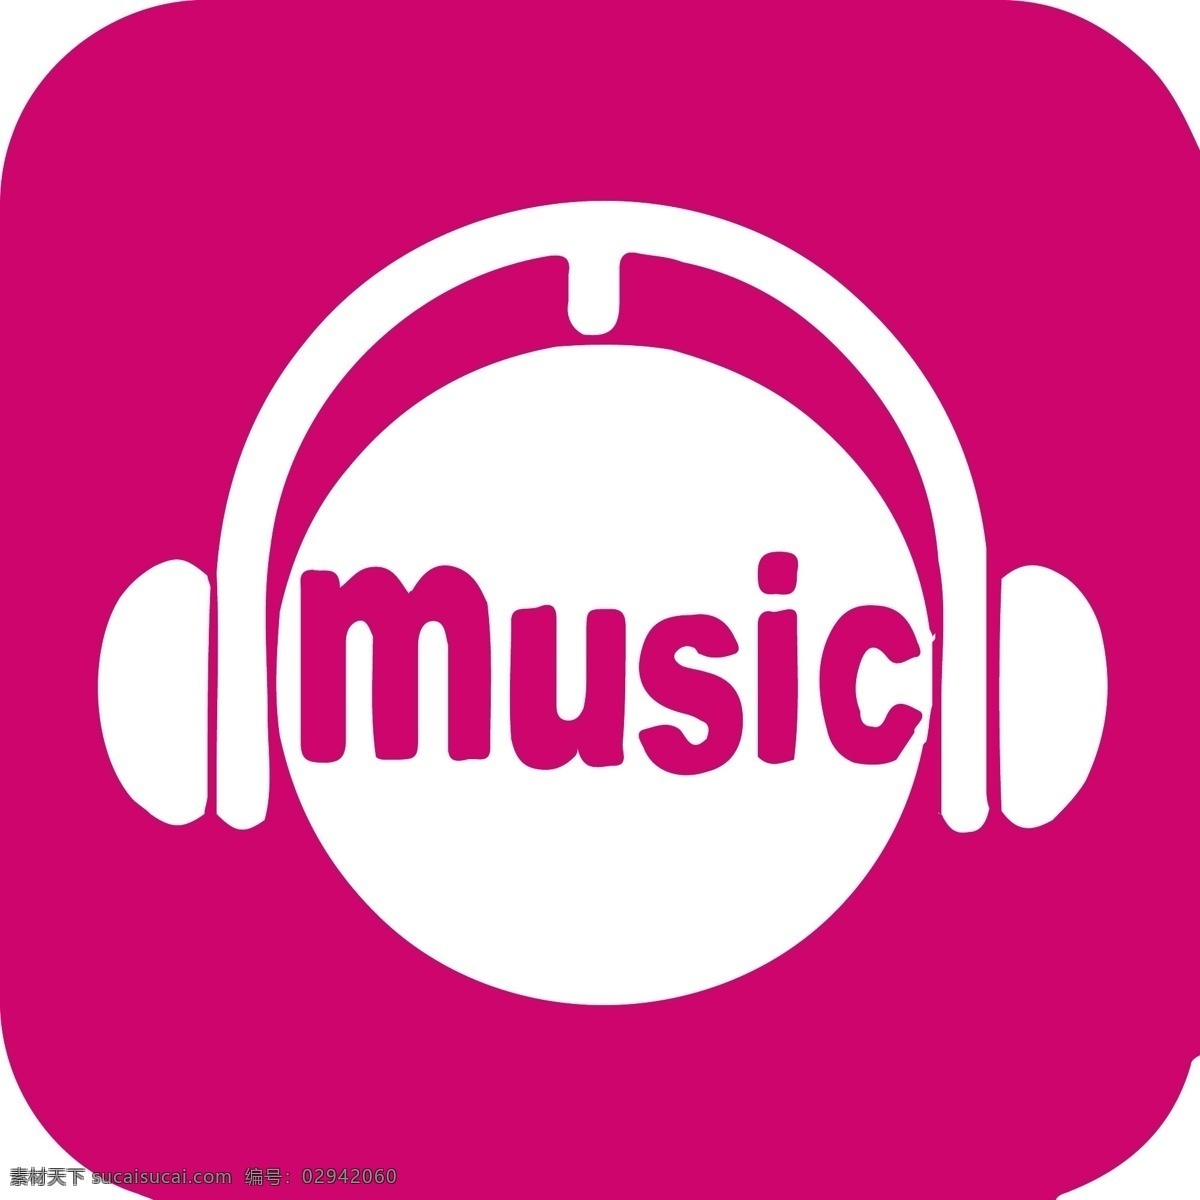 咪 咕 音乐 logo 咪咕音乐 muisc 玫红色 耳机 独家 歌曲 歌评 音乐平台 标志图标 企业 标志